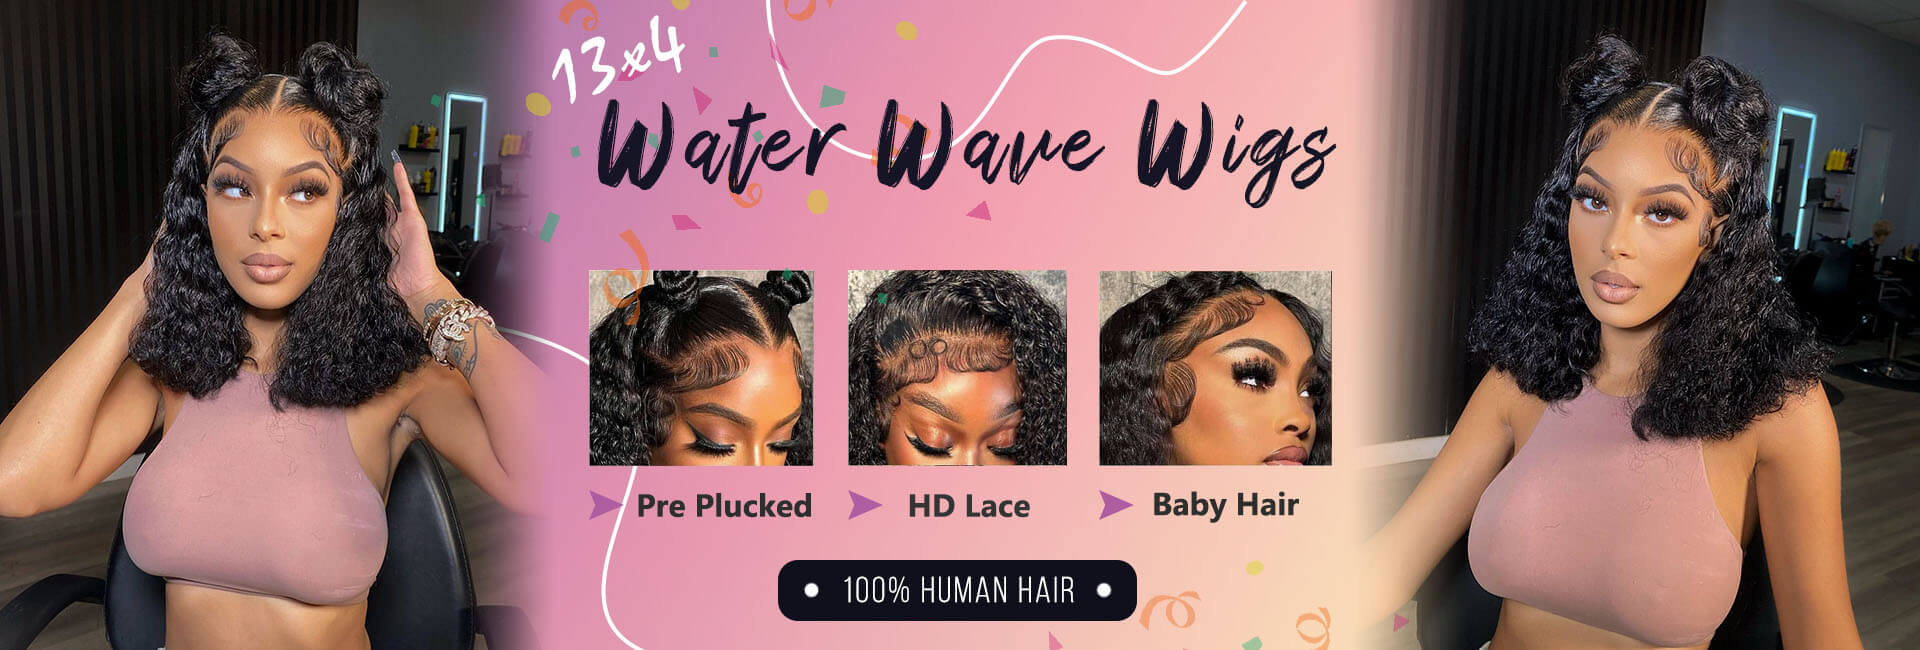 SISDORE HAIR water wave bob wigs human hair